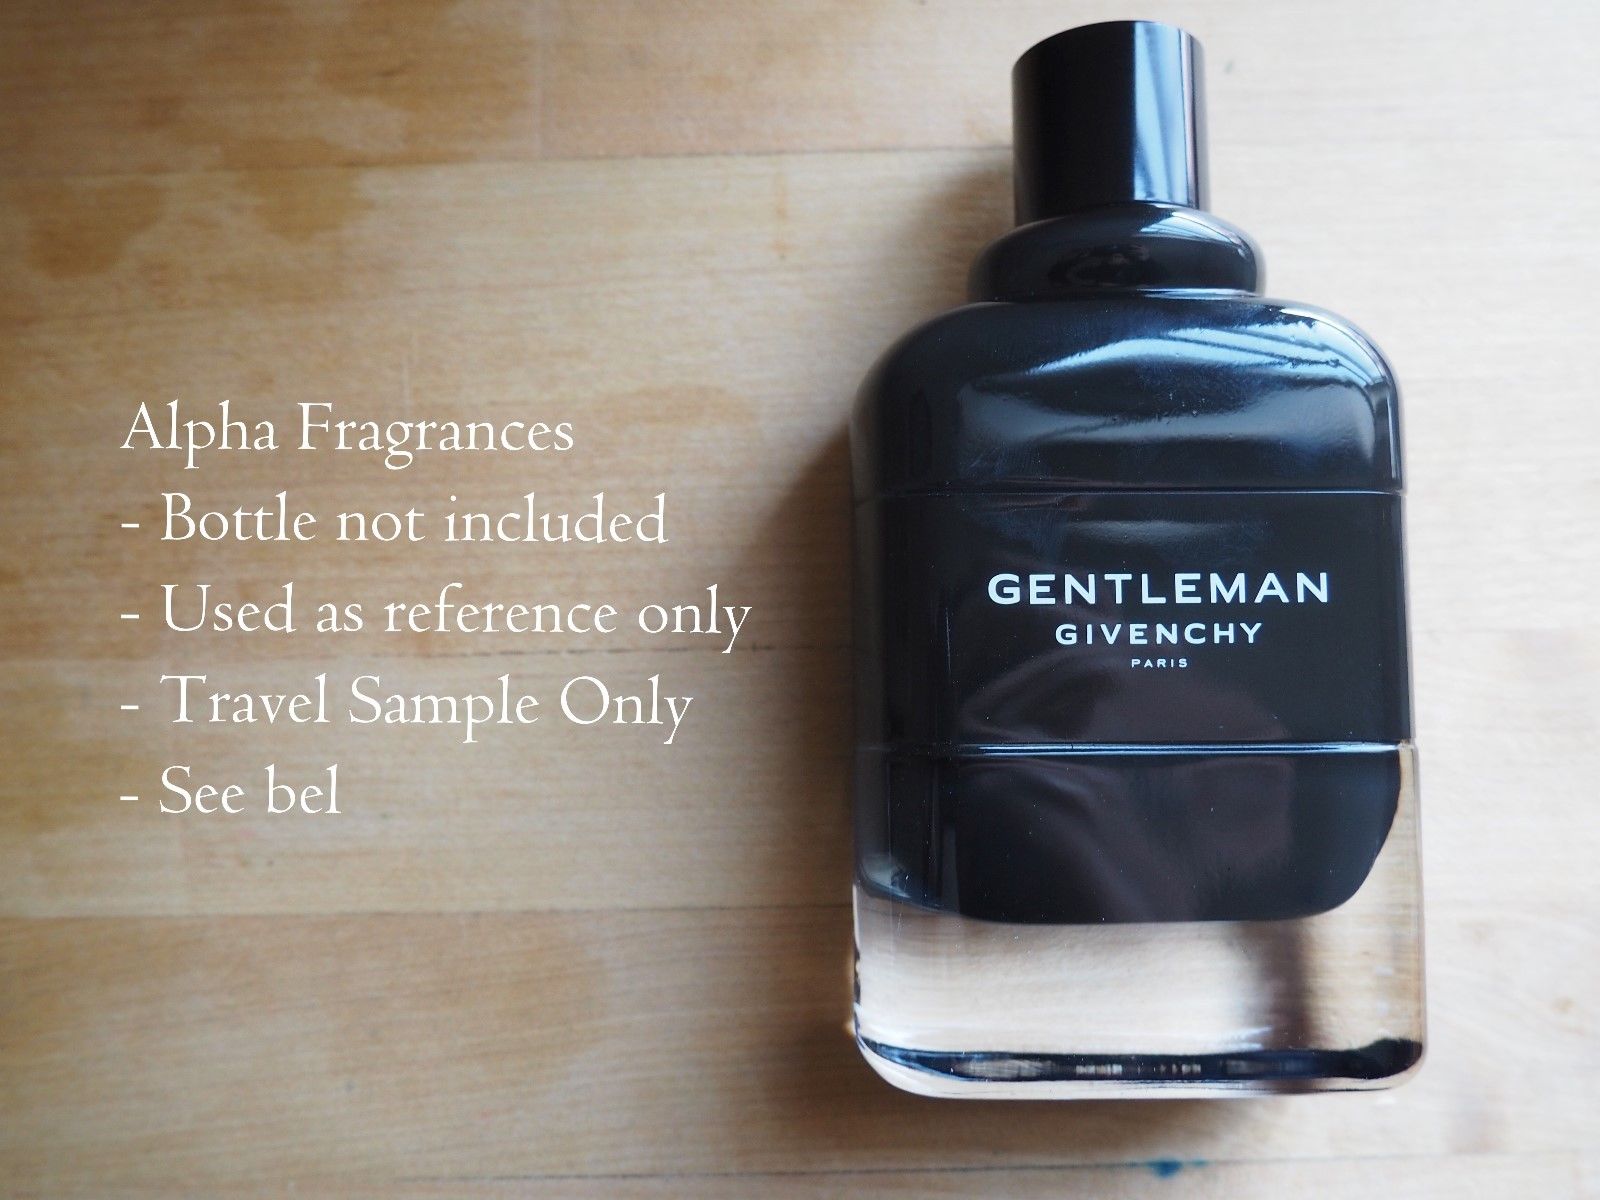 gentleman eau de parfum givenchy